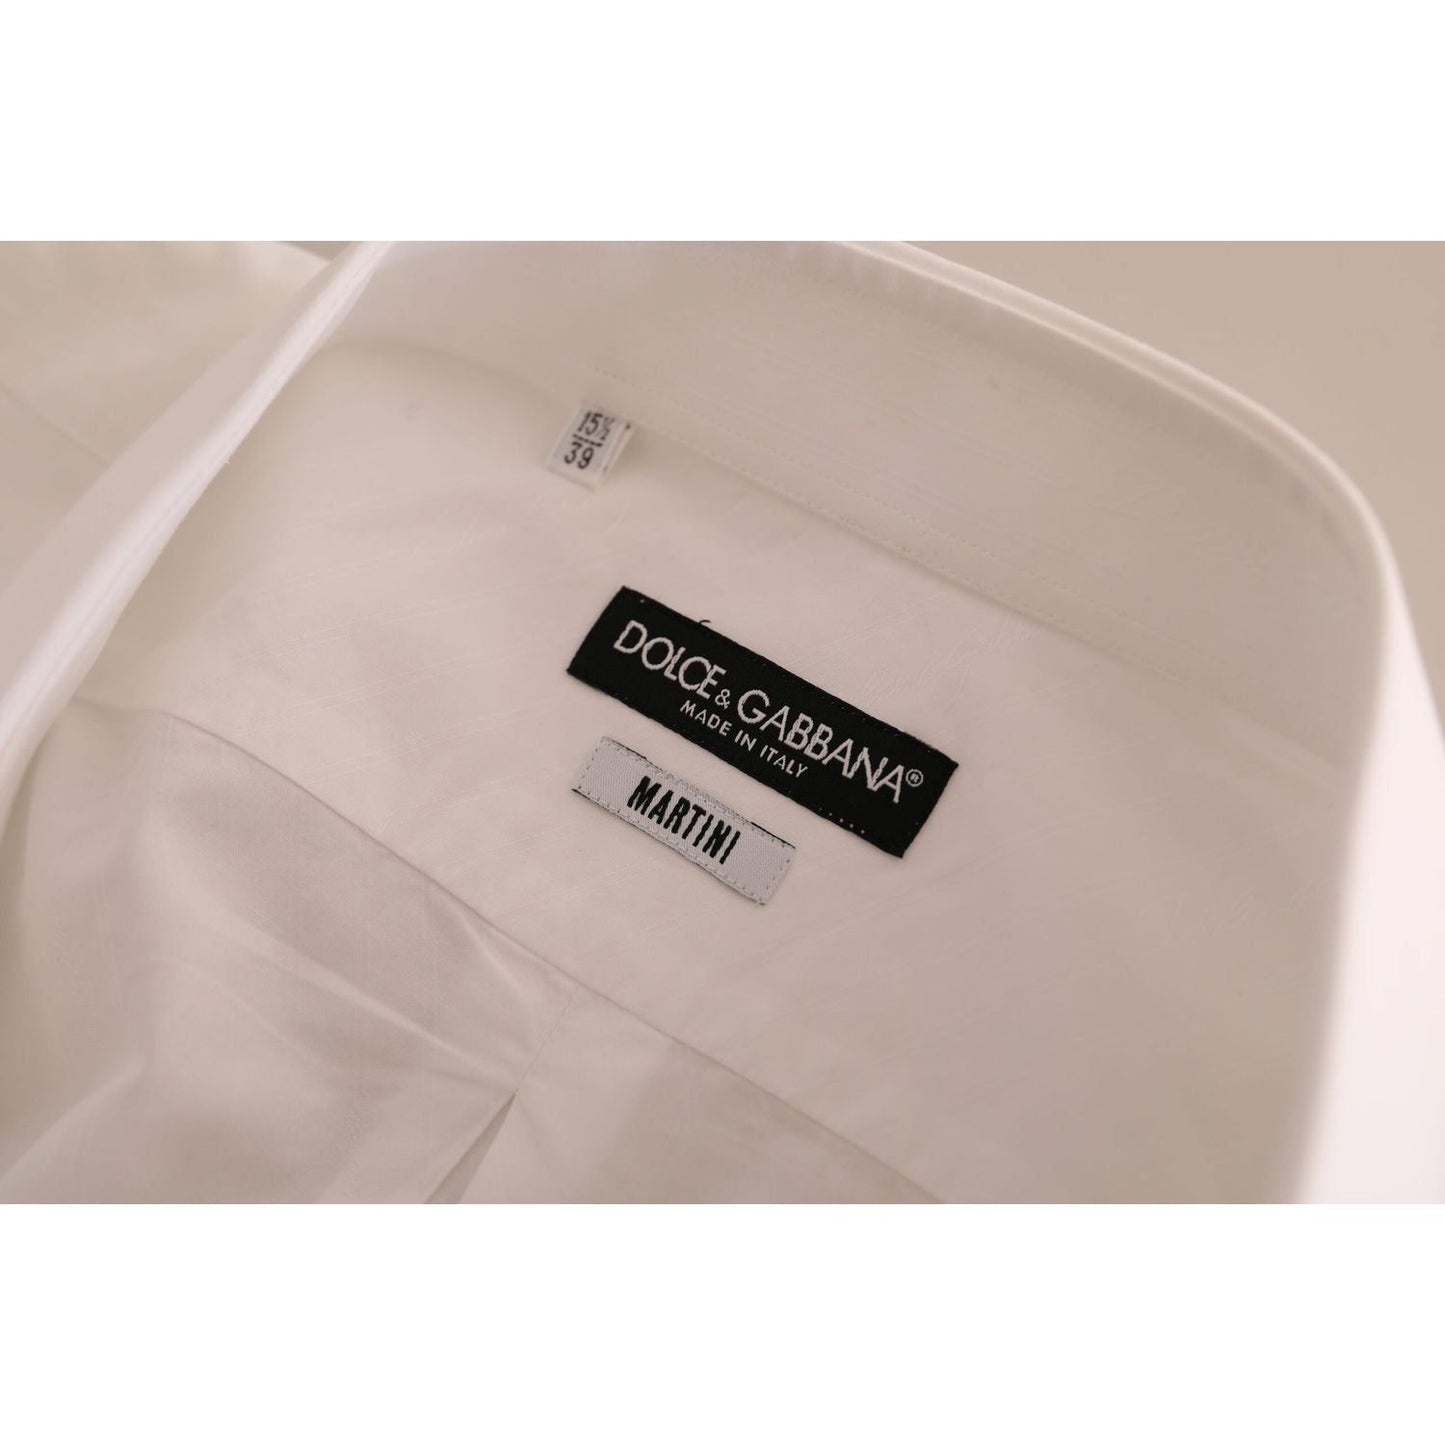 Dolce & Gabbana Elegant White Cotton Martini Dress Shirt white-martini-cotton-dress-formal-shirt